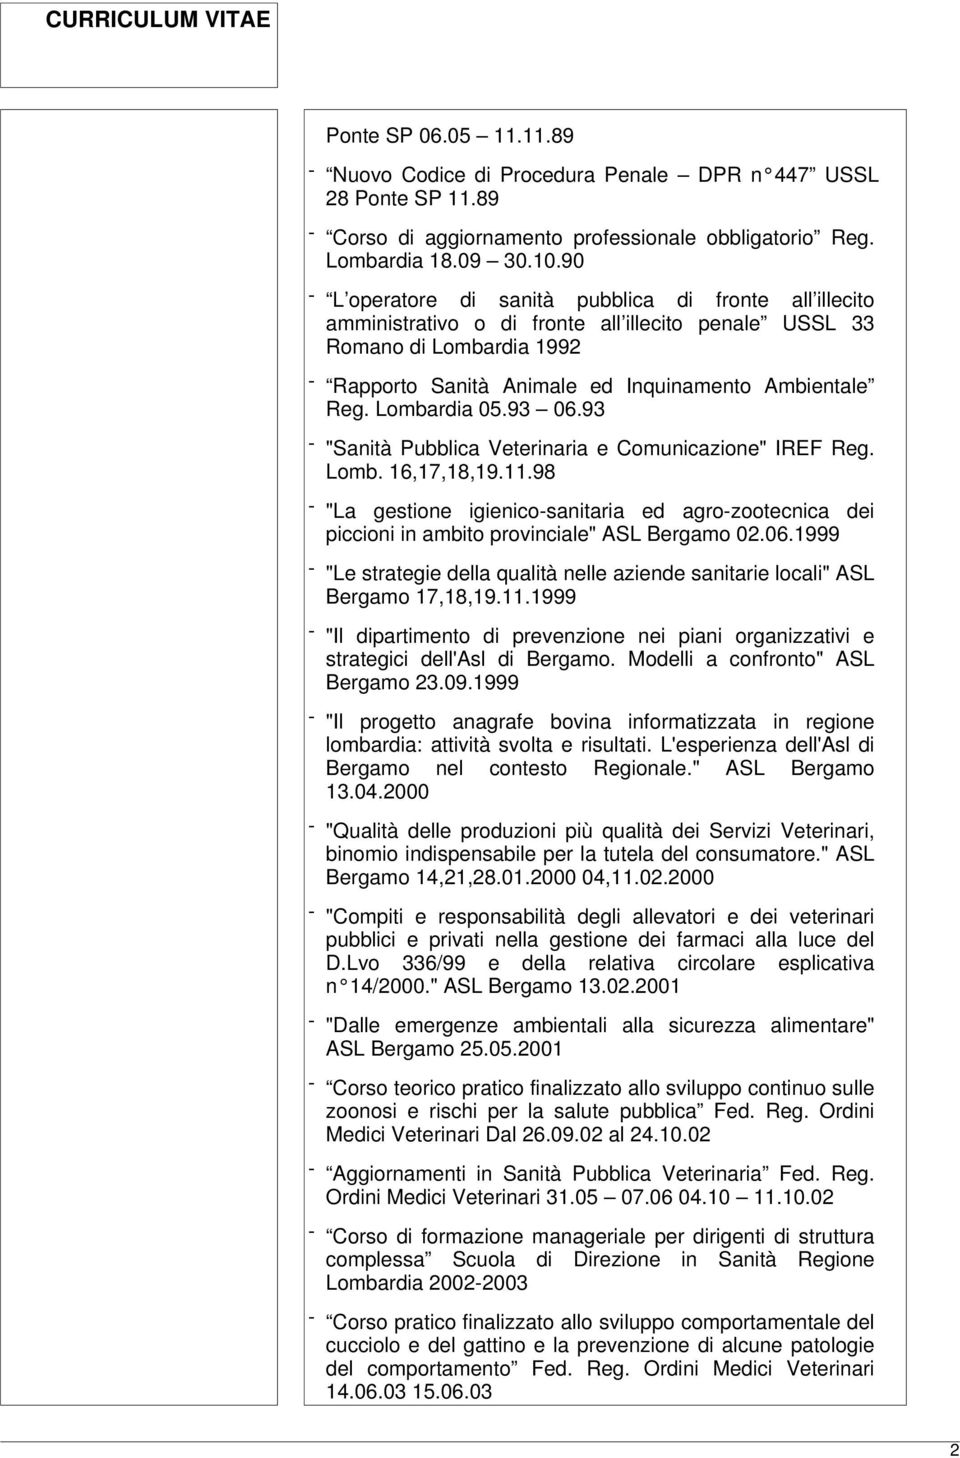 Lombardia 05.93 06.93 - "Sanità Pubblica Veterinaria e Comunicazione" IREF Reg. Lomb. 16,17,18,19.11.